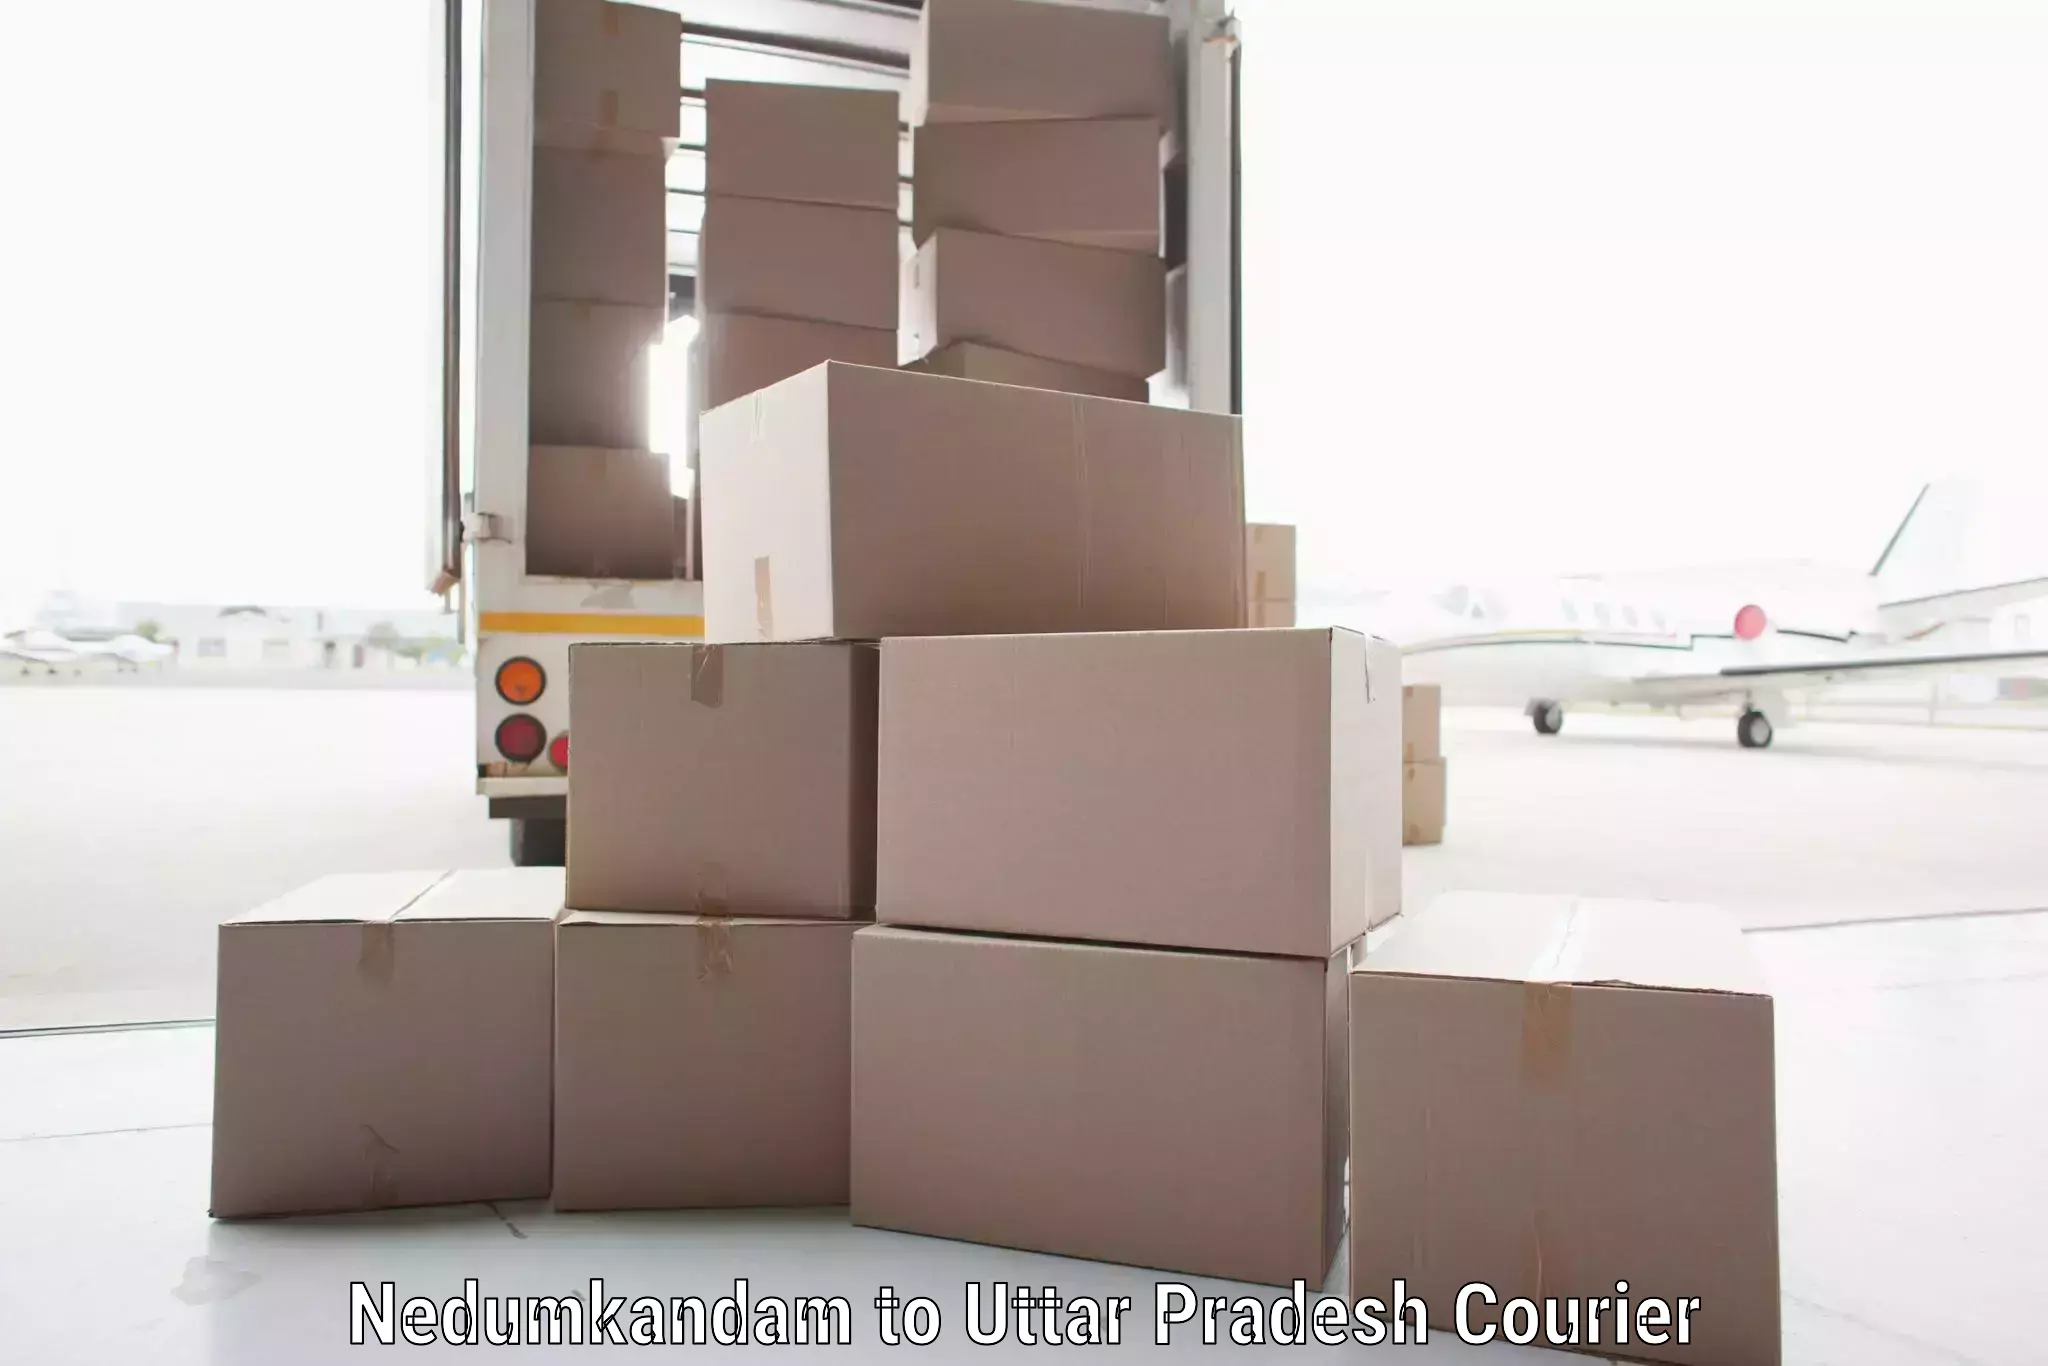 Ocean freight courier Nedumkandam to Khutar